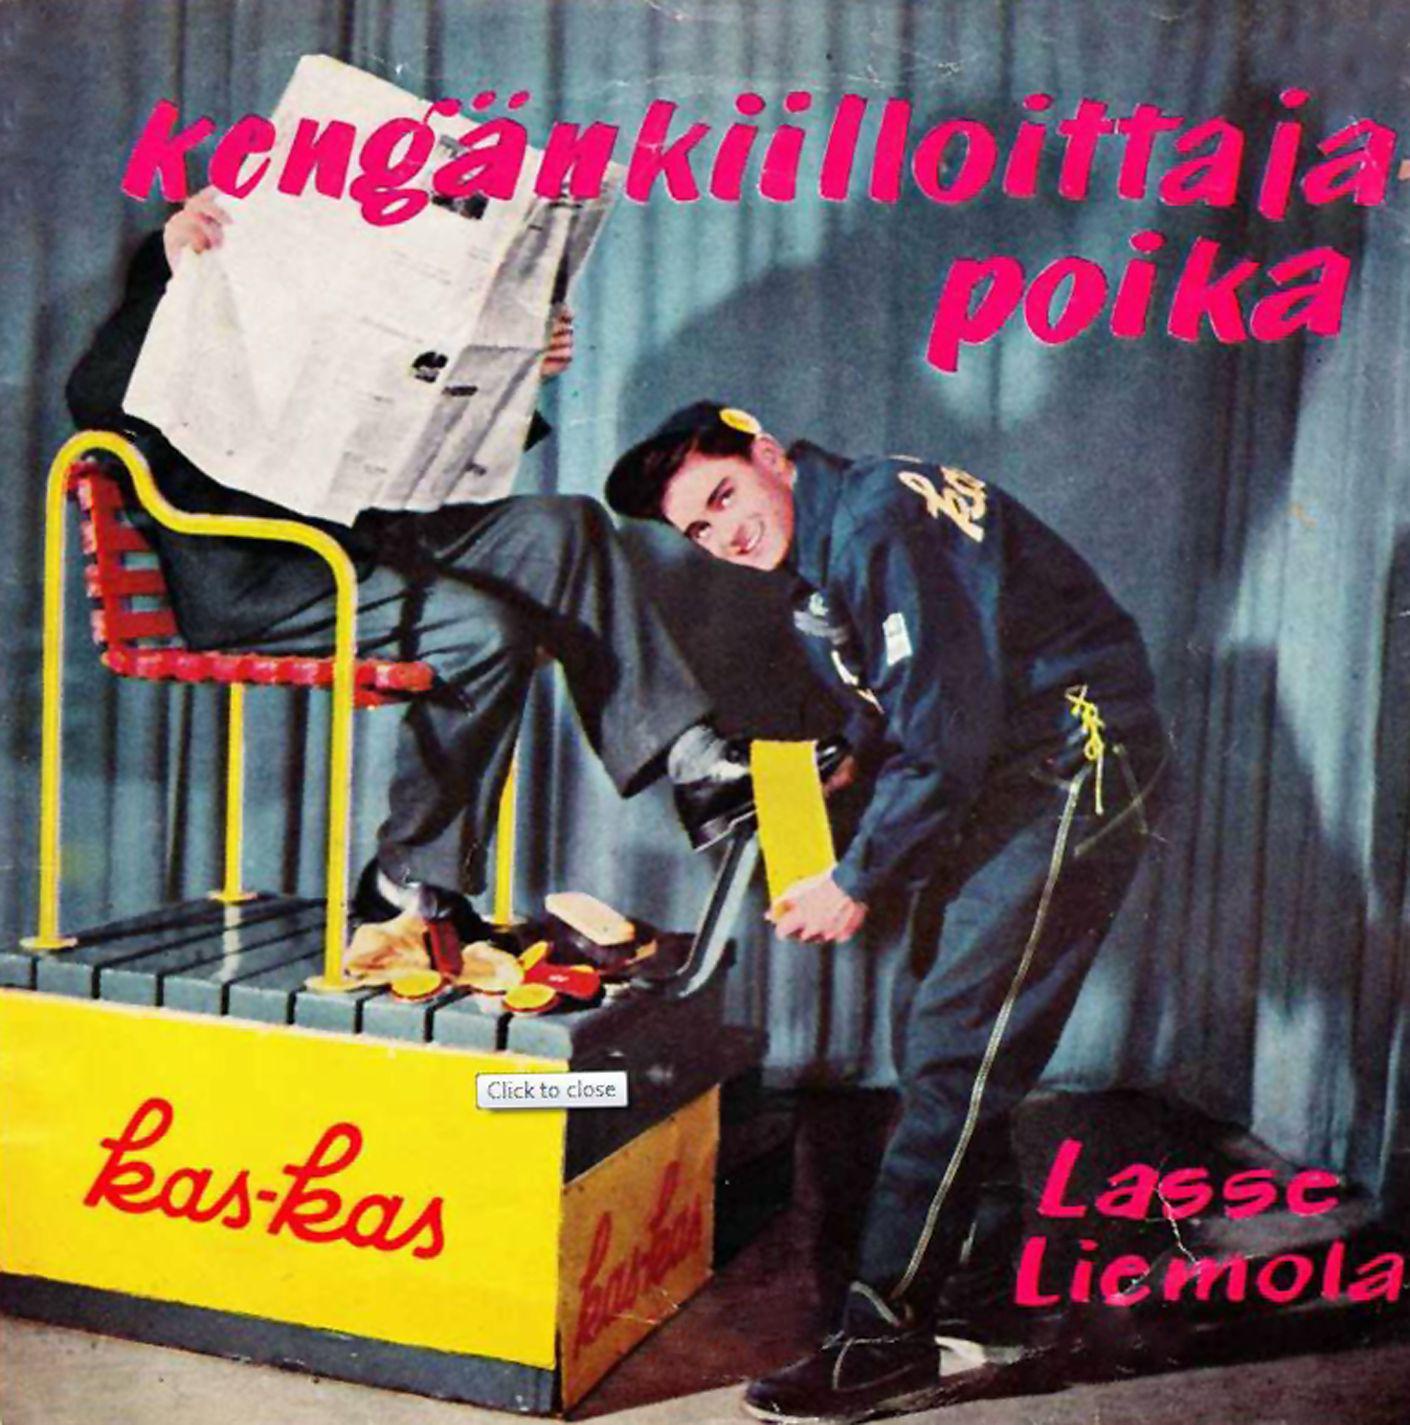 Lasse Liemola - Tumma yö